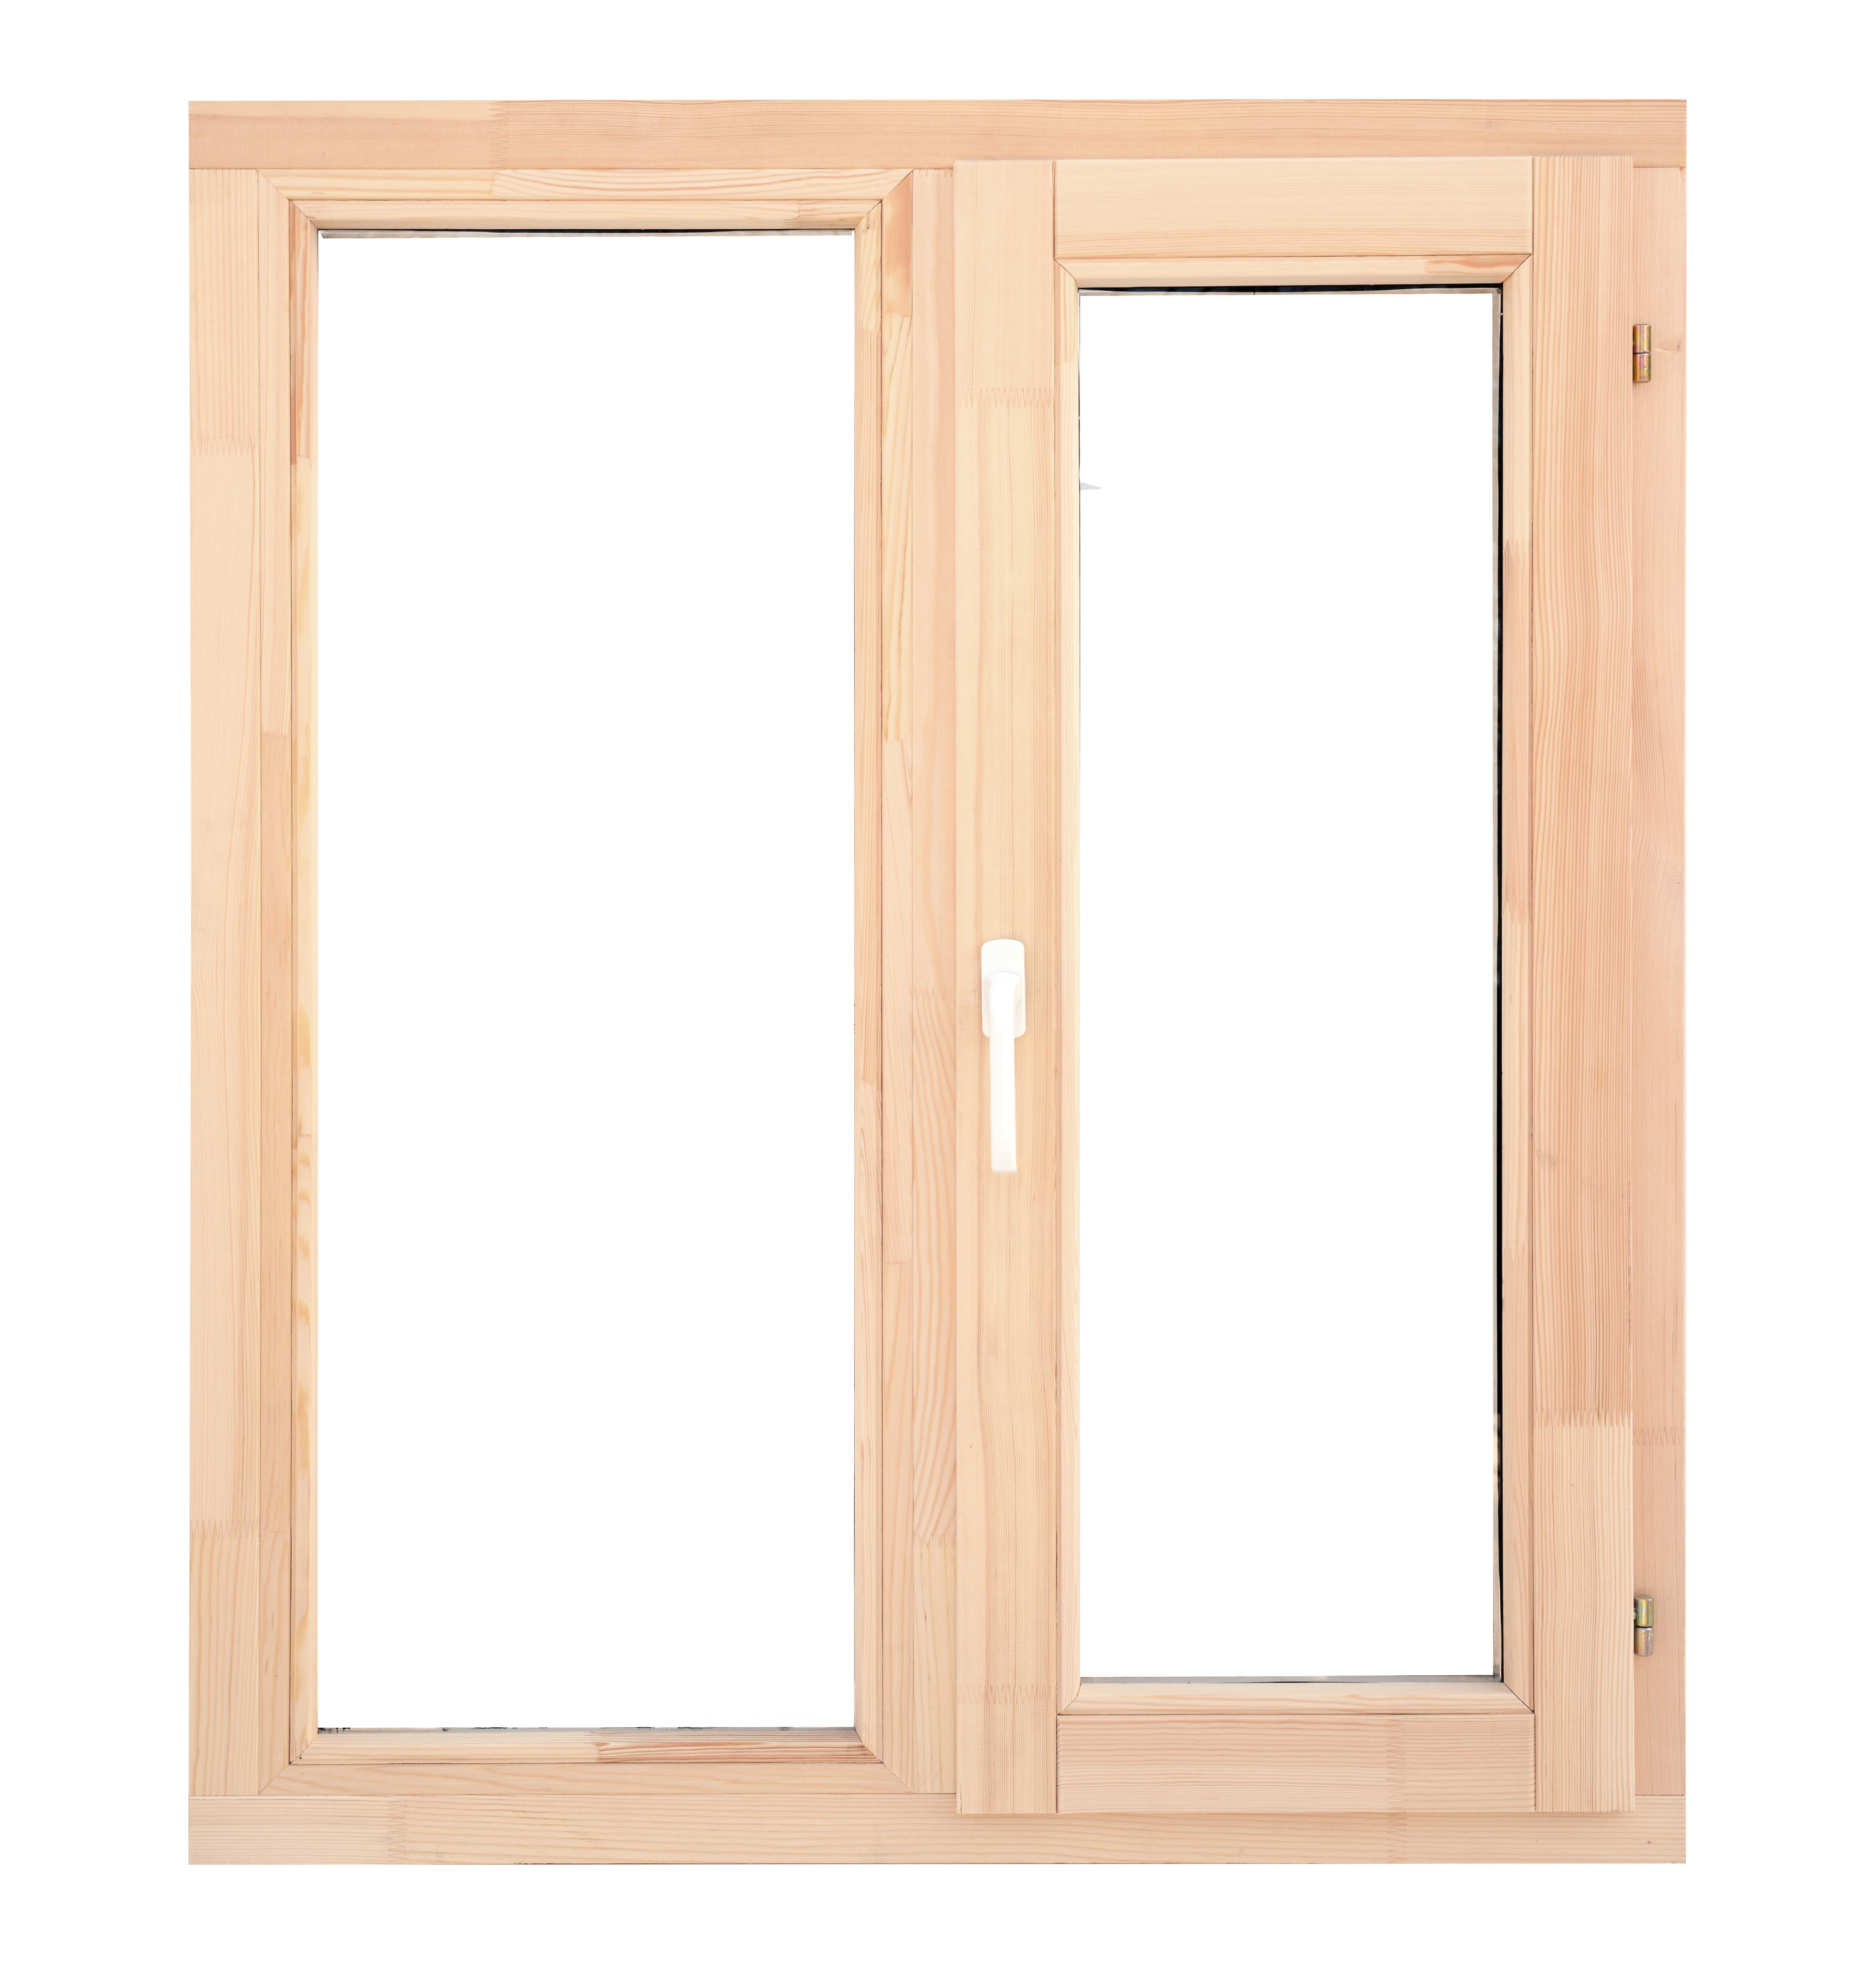 Леруа готовые окна. Окно деревянное 116x117. Блок оконный деревянный 1000х1000. Окно деревянное 96x58 см, однокамерный стеклопакет. Блок оконный деревянный 1000х1000х90 мм без форточки.